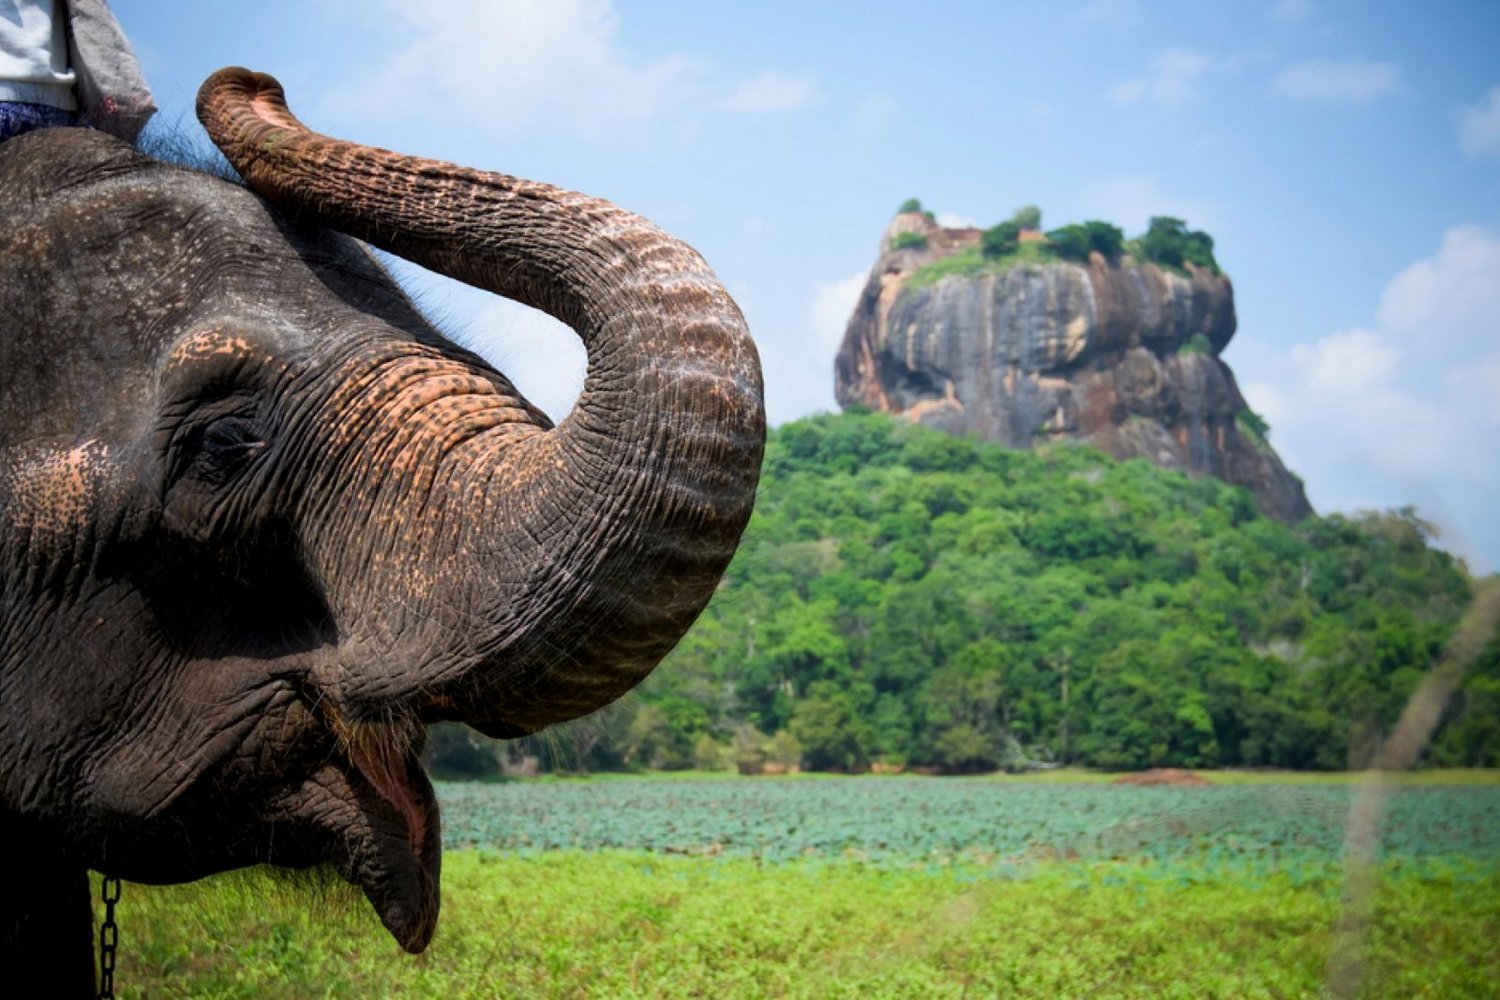 Features of Sri Lanka